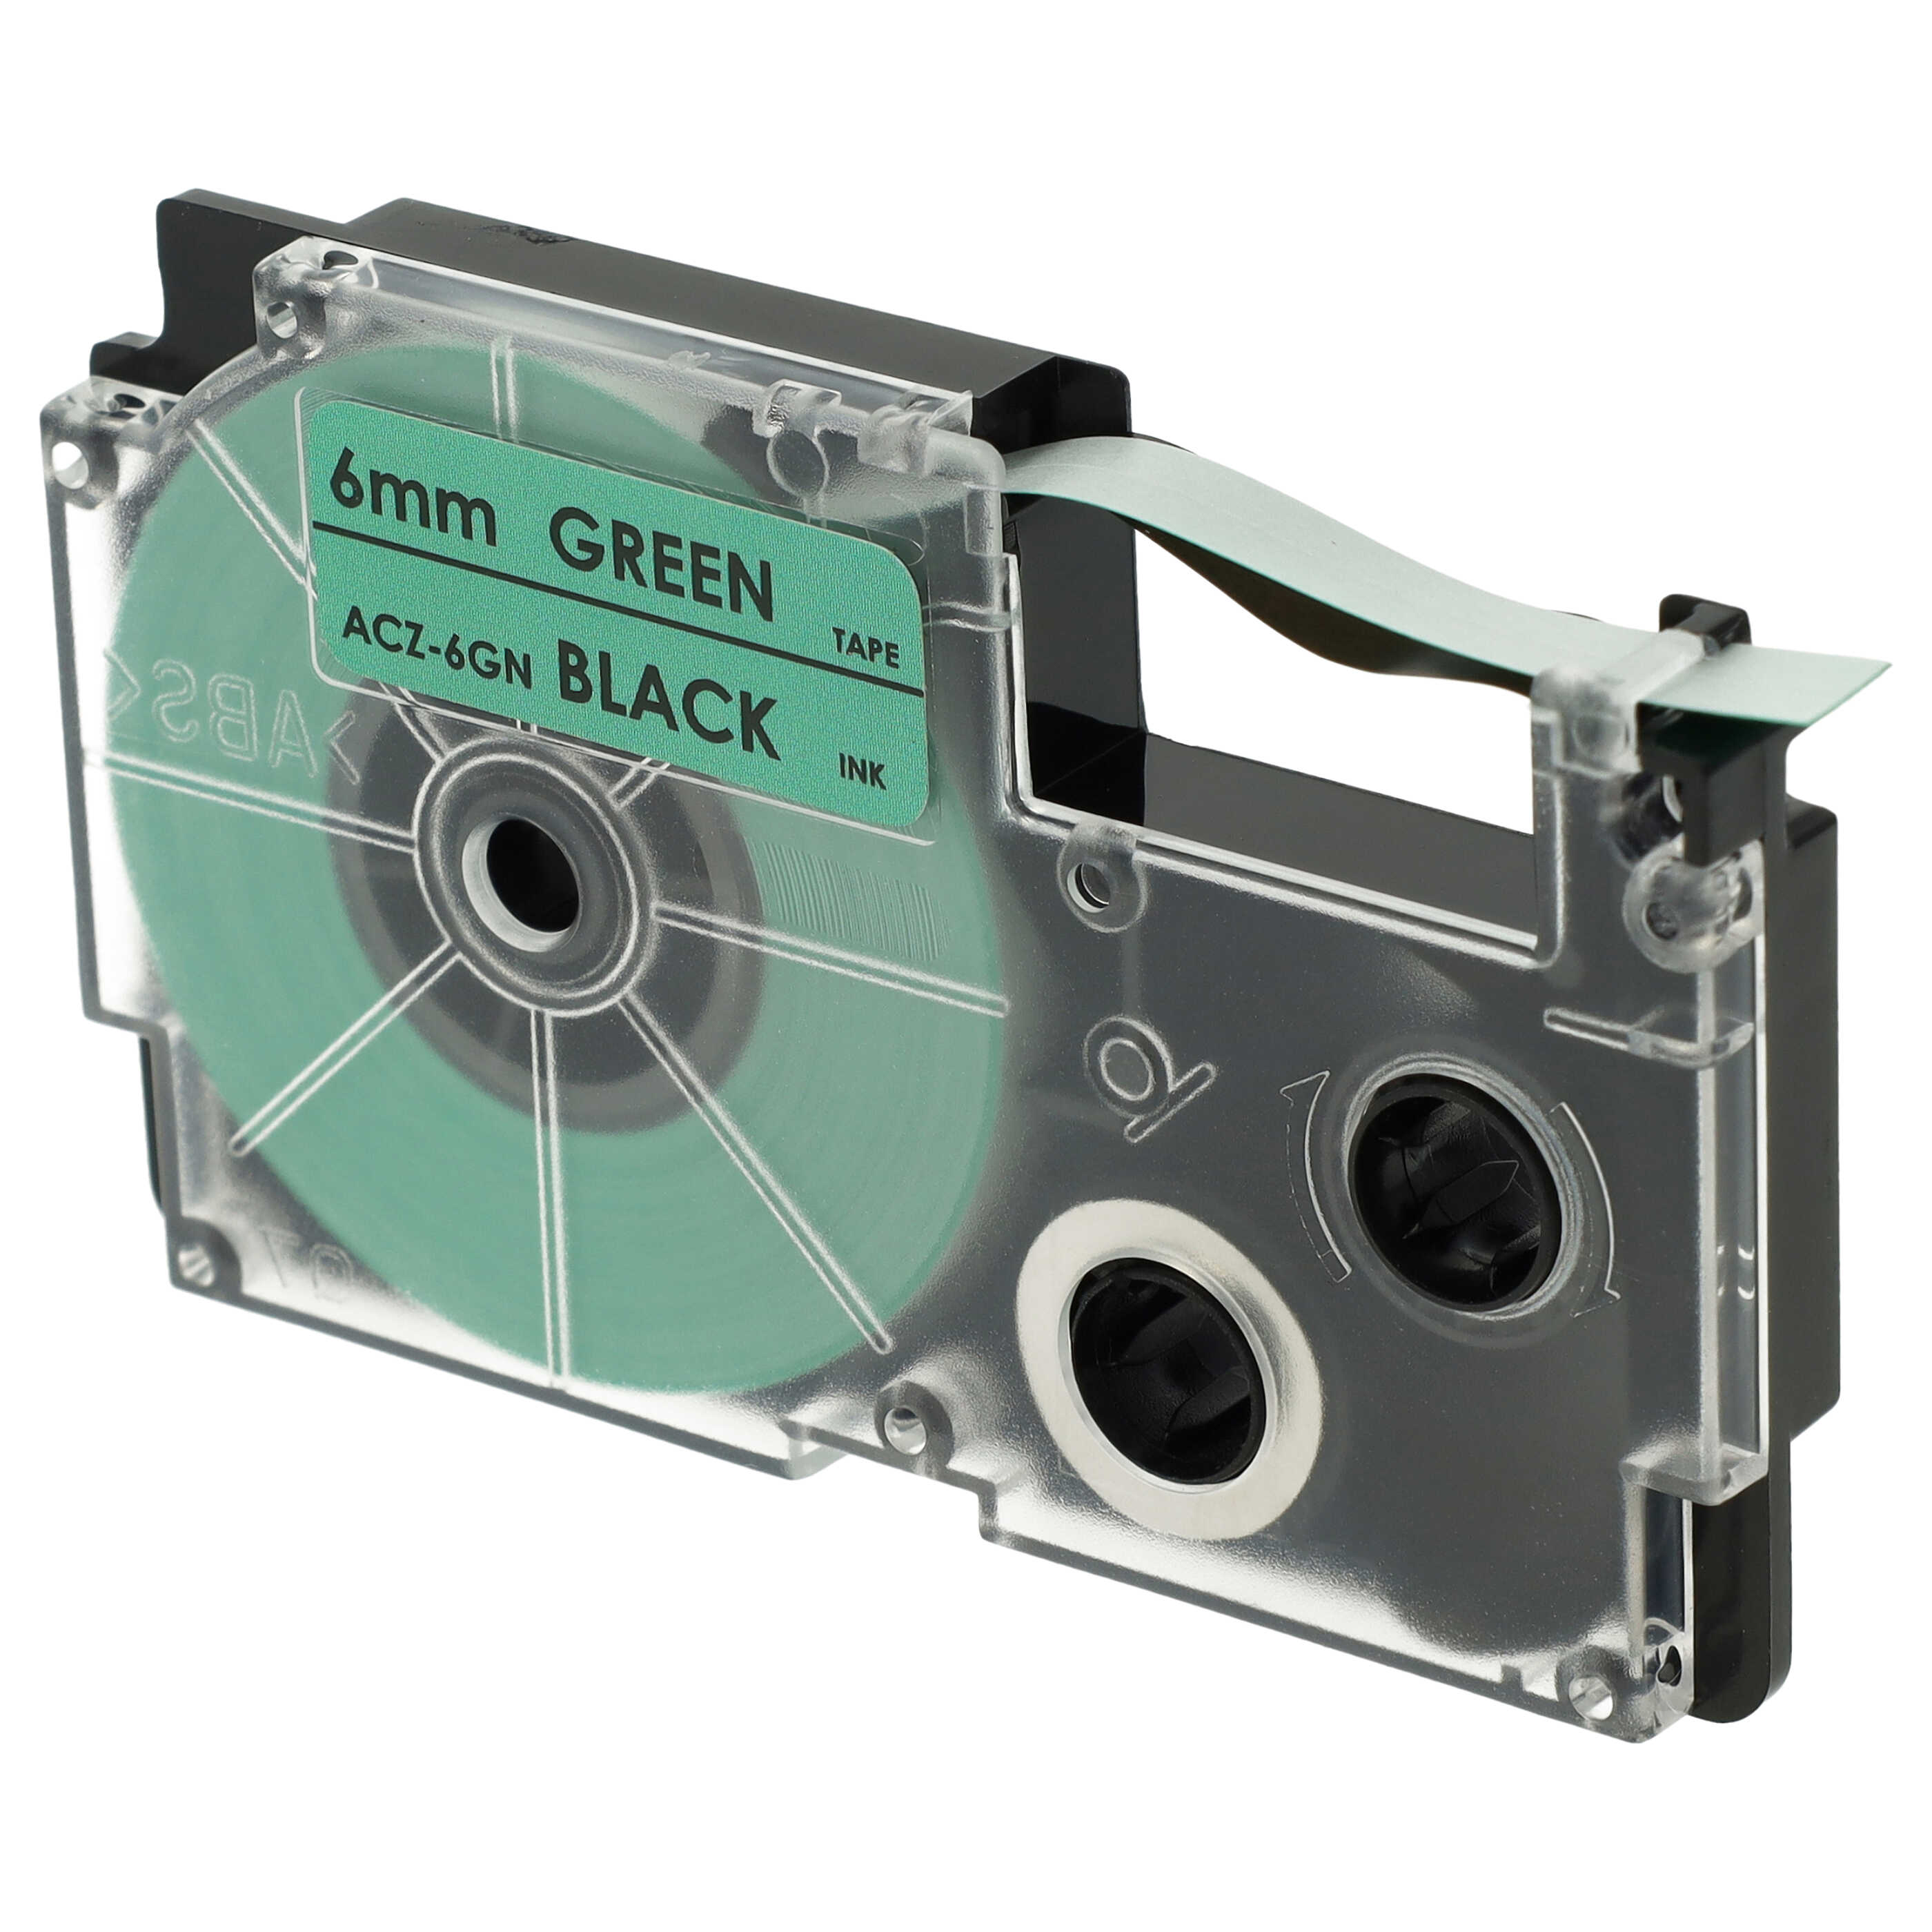 Schriftband als Ersatz für Casio XR-6GN, XR-6GN1 - 6mm Schwarz auf Grün